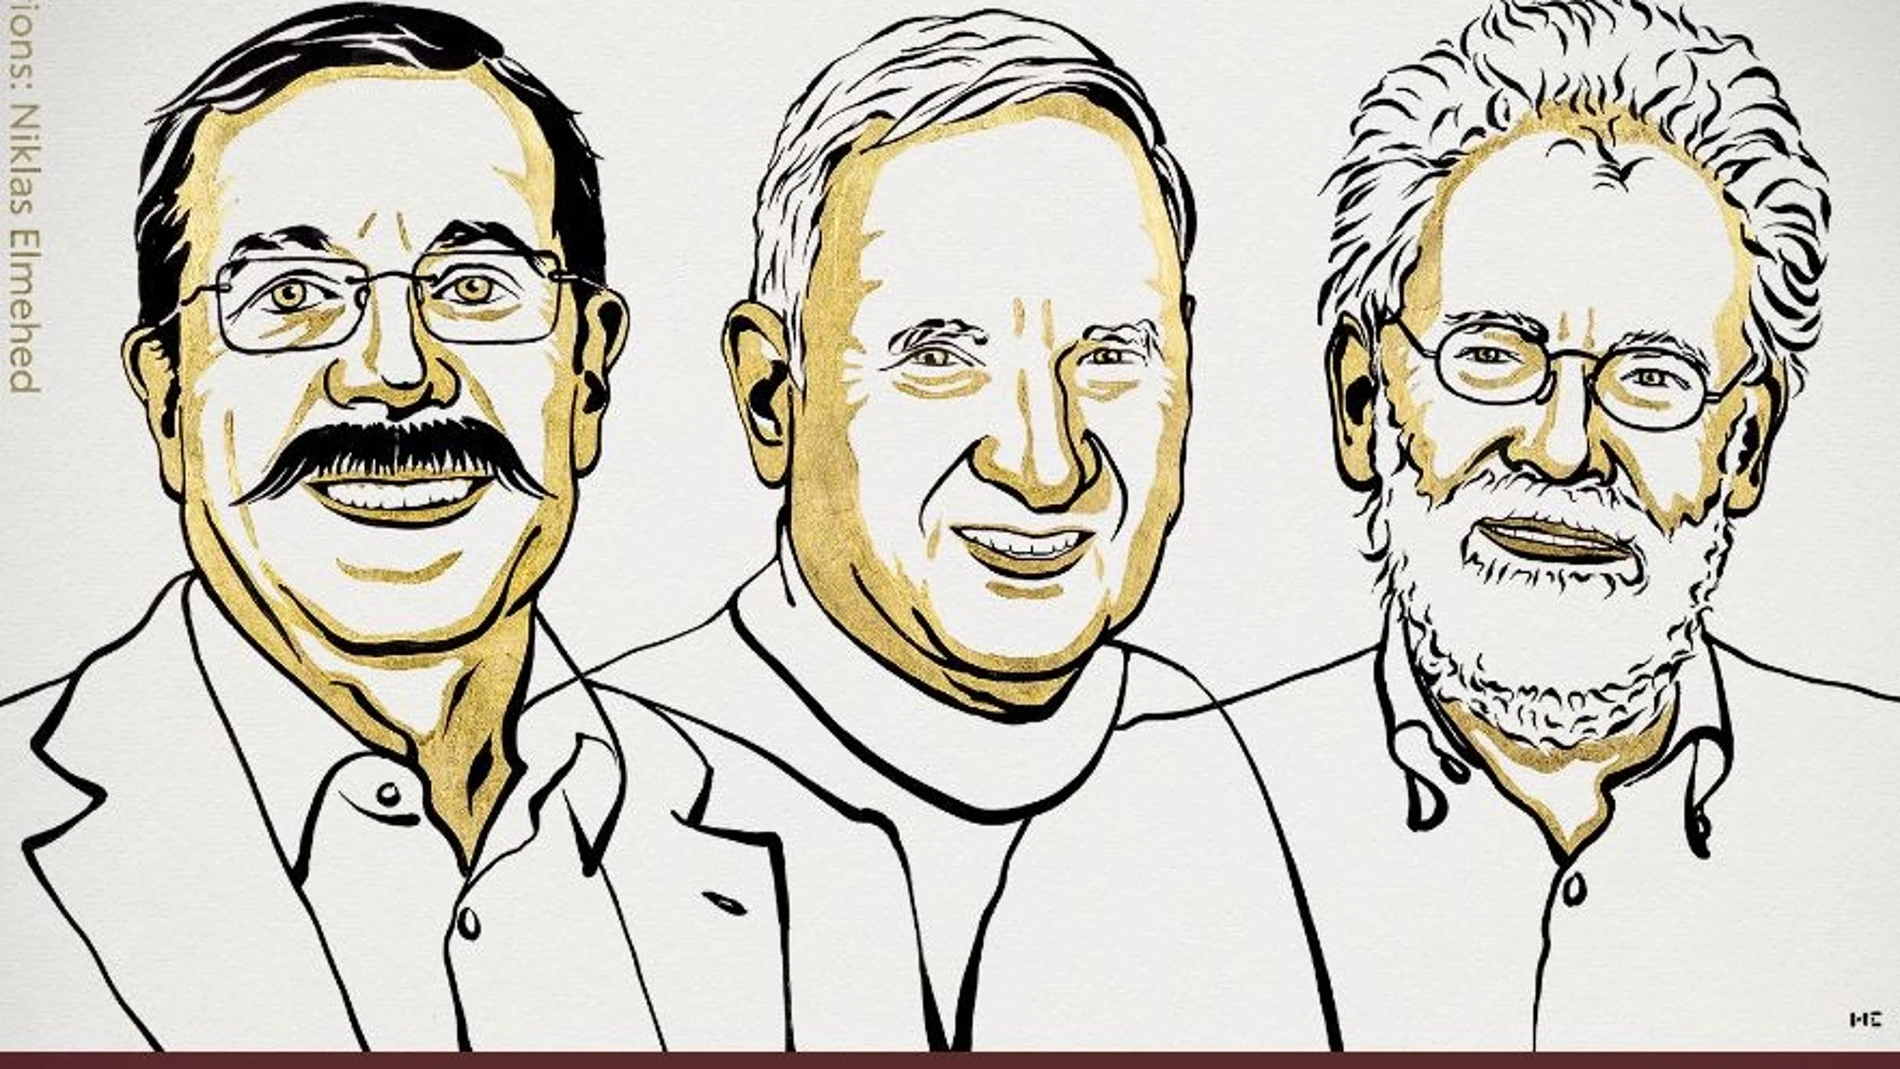 Retratos dibujados de tres hombres. Arriba se lee "The Nobel Prize in Physics 2022" y, debajo, "Alain Aspect, John F. Clauser, Anton Zeilinger"